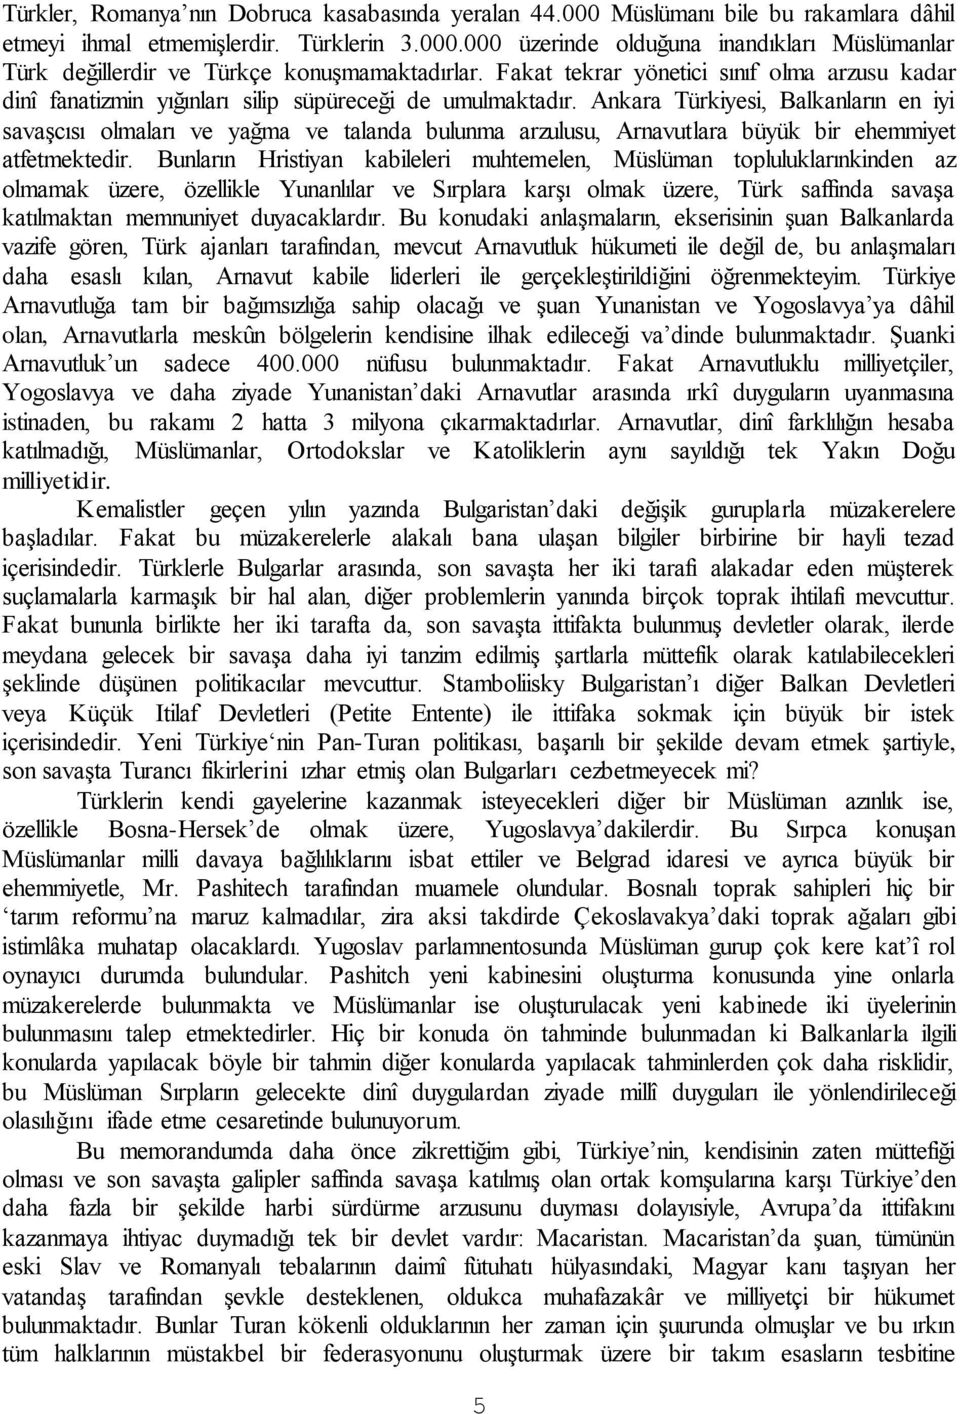 Ankara Türkiyesi, Balkanların en iyi savaşcısı olmaları ve yağma ve talanda bulunma arzulusu, Arnavutlara büyük bir ehemmiyet atfetmektedir.